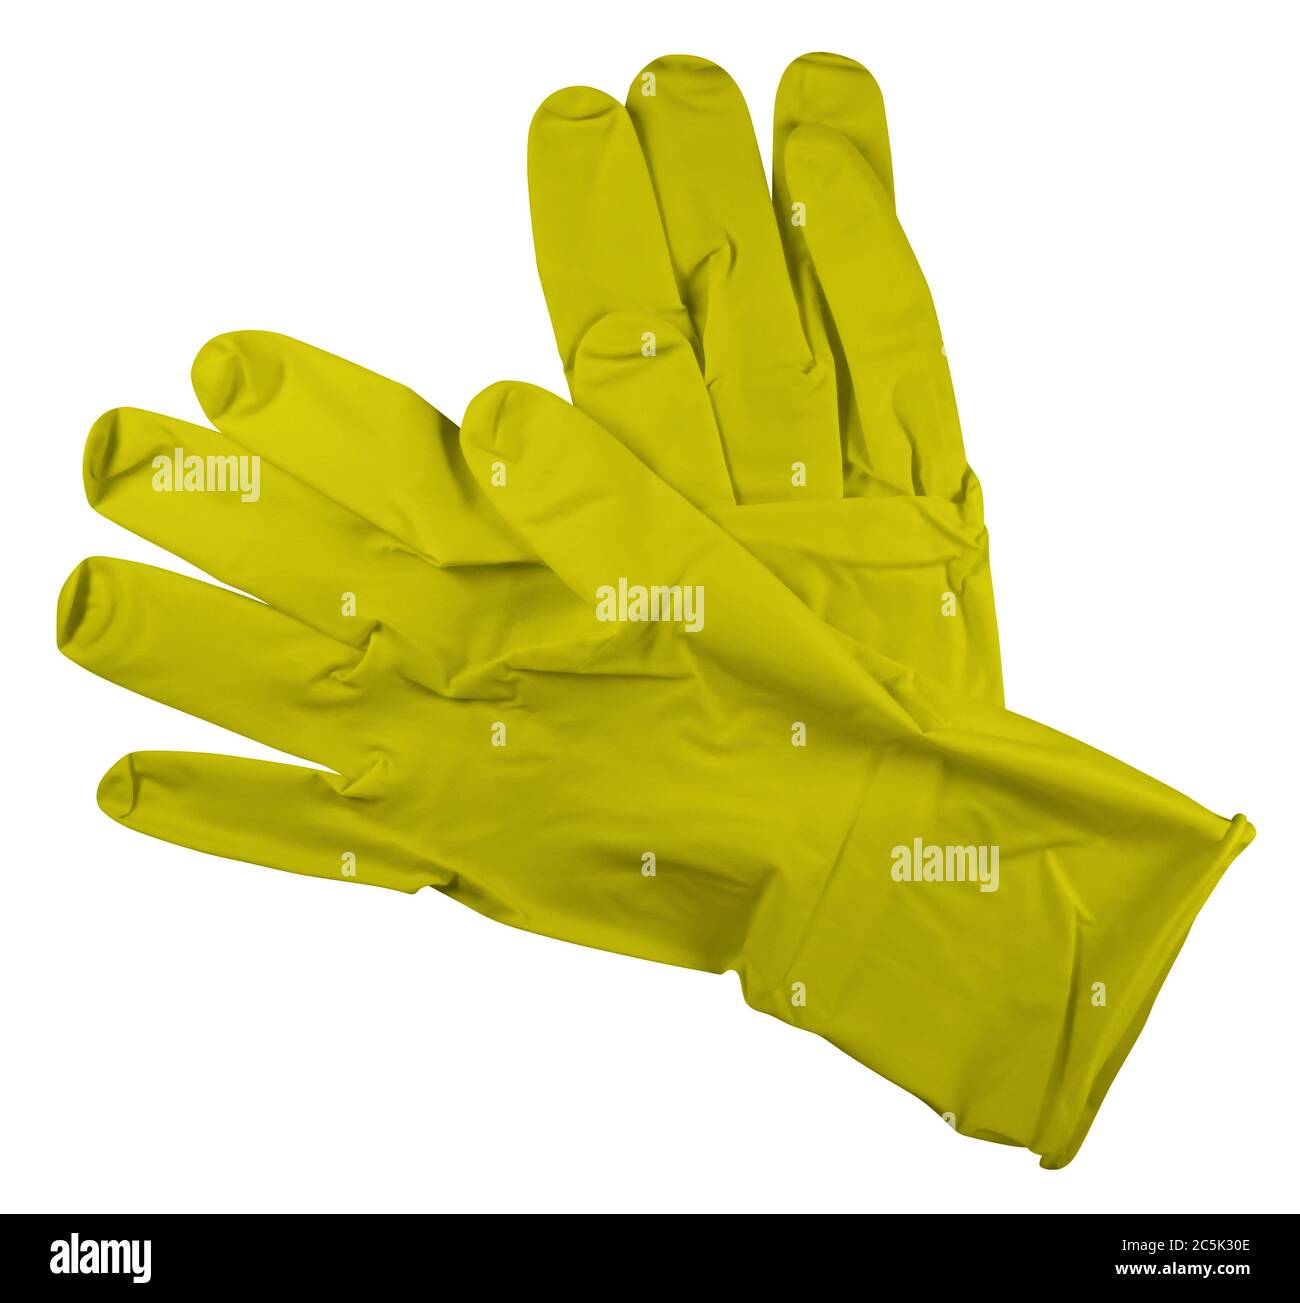 Coppia di guanti di gomma per uso medico gialli, isolati su sfondo bianco. Tracciato di ritaglio incluso. Foto Stock